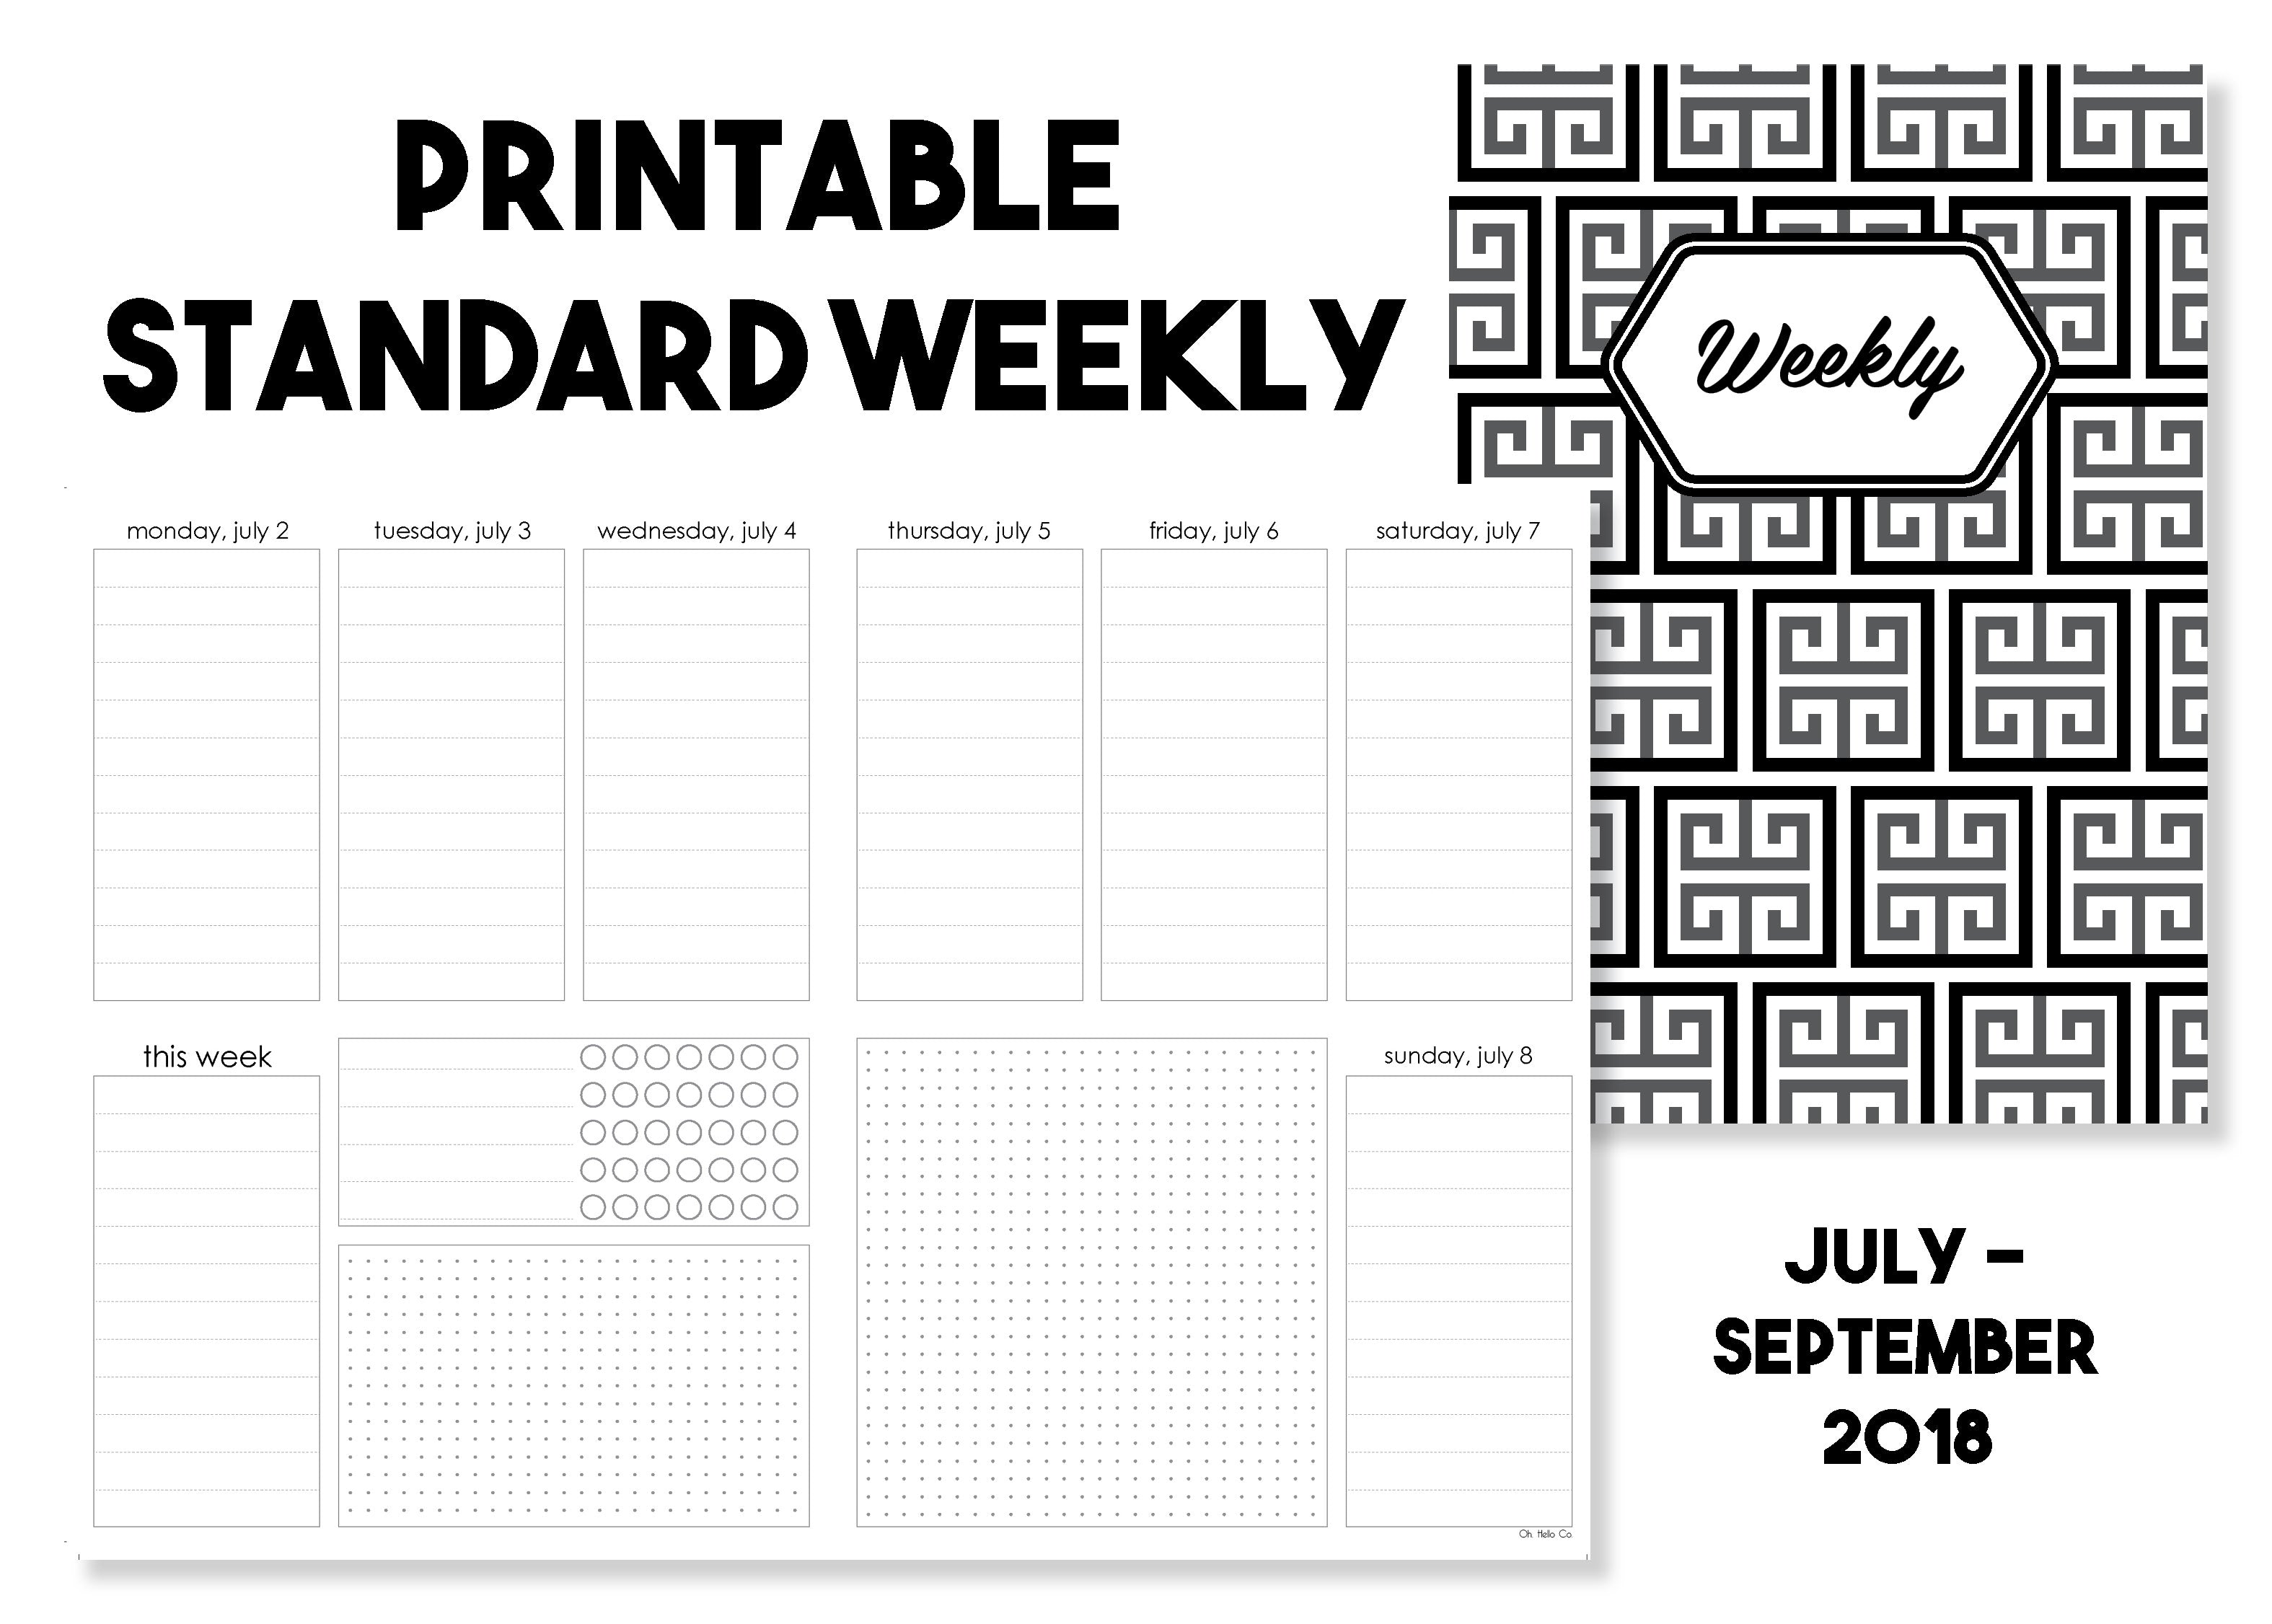 Printable Standard Weekly Traveler's Notebook Insert - July